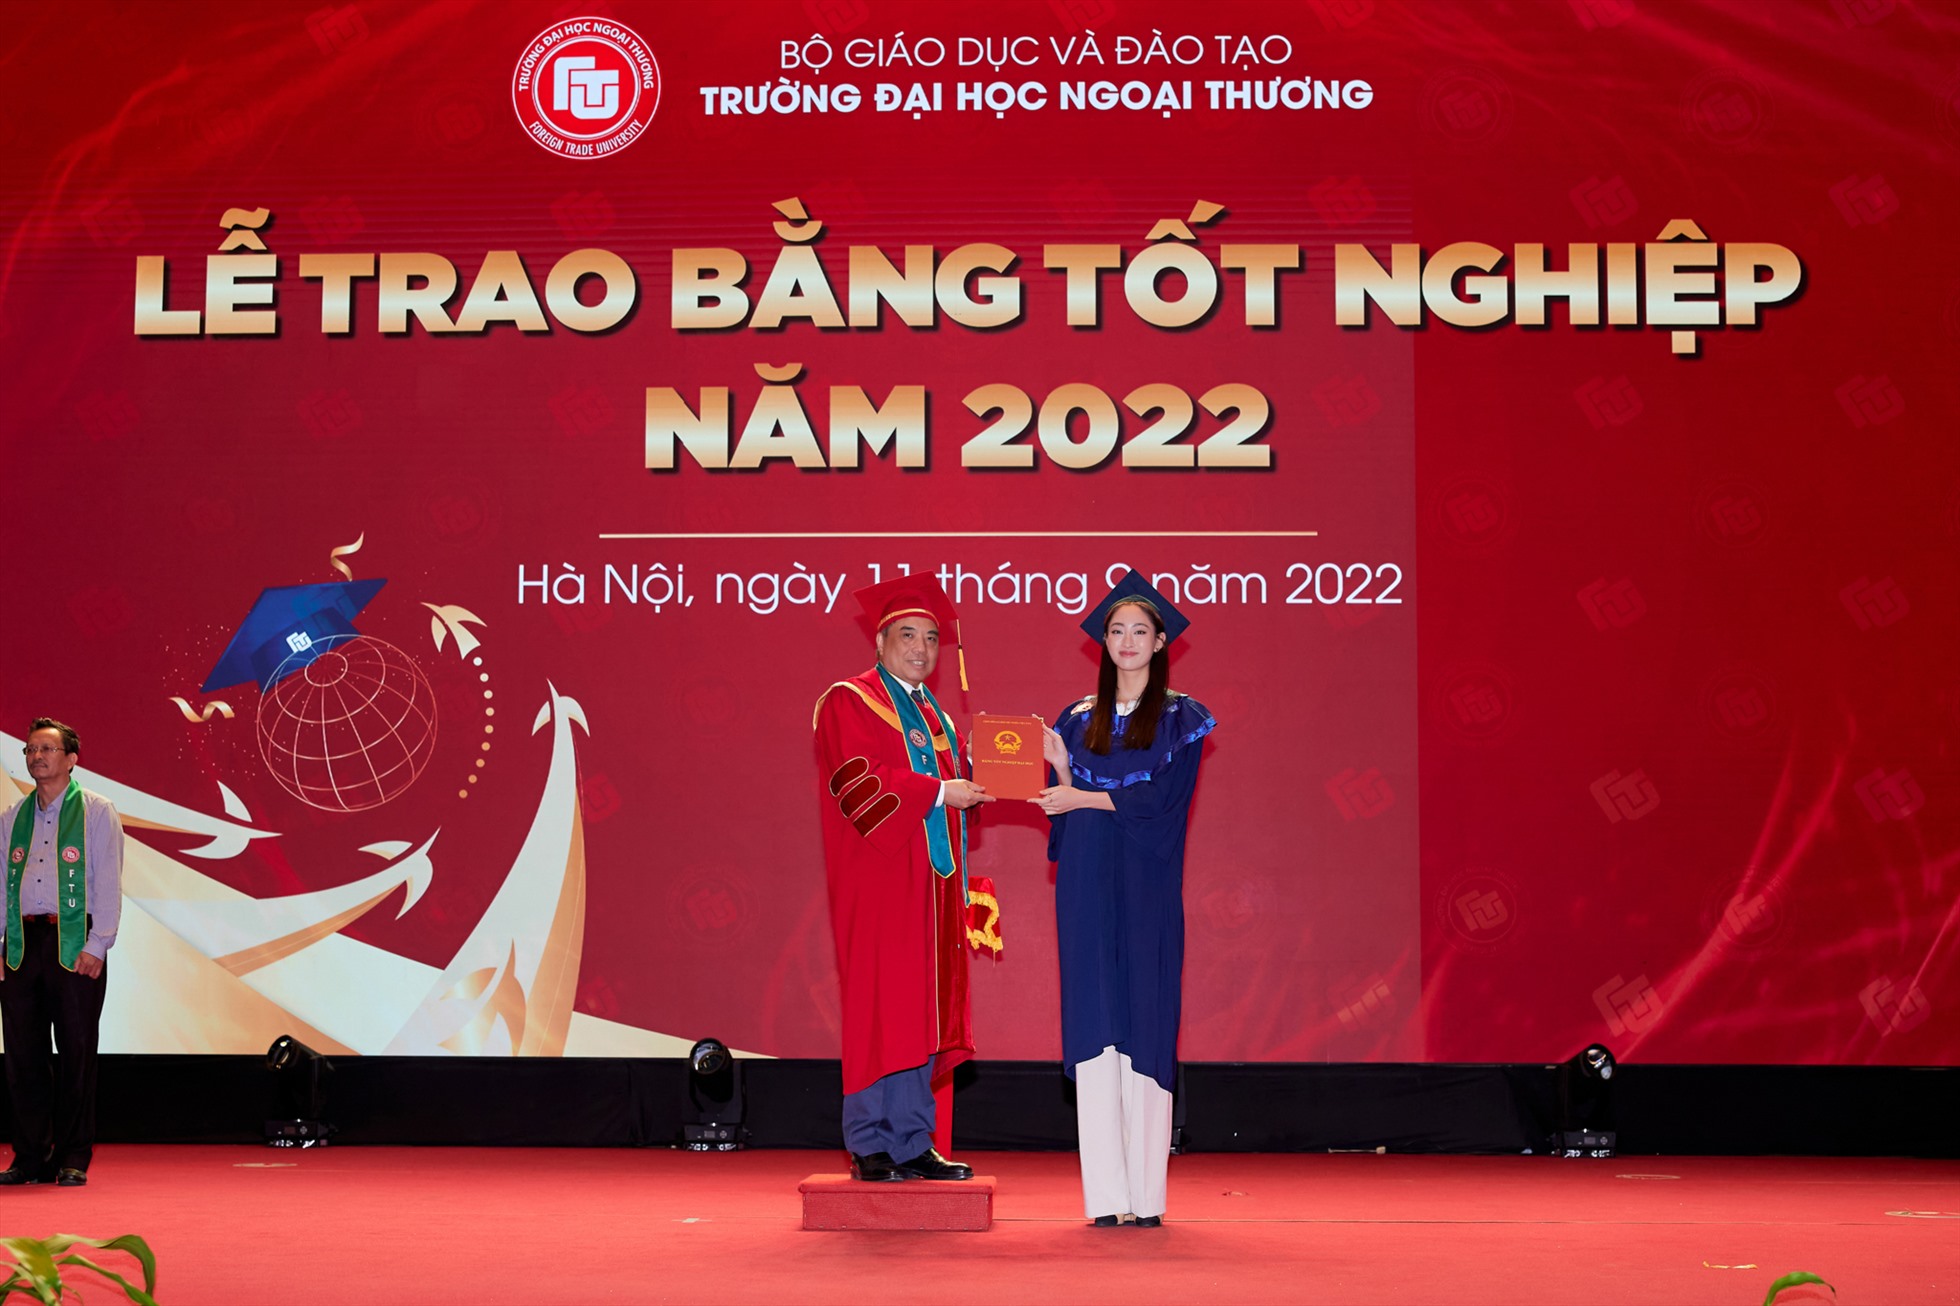 Hoa hậu Lương Thùy Linh đã chính thức tốt nghiệp Đại học Ngoại thương sau 4 năm học tập. Cô nàng khoe ngay tấm bằng cử nhân loại Xuất sắc ngành Kinh tế đối ngoại, chương trình chất lượng cao giảng dạy bằng tiếng Anh, với số điểm 3.6/4.0. Ảnh: NSCC.